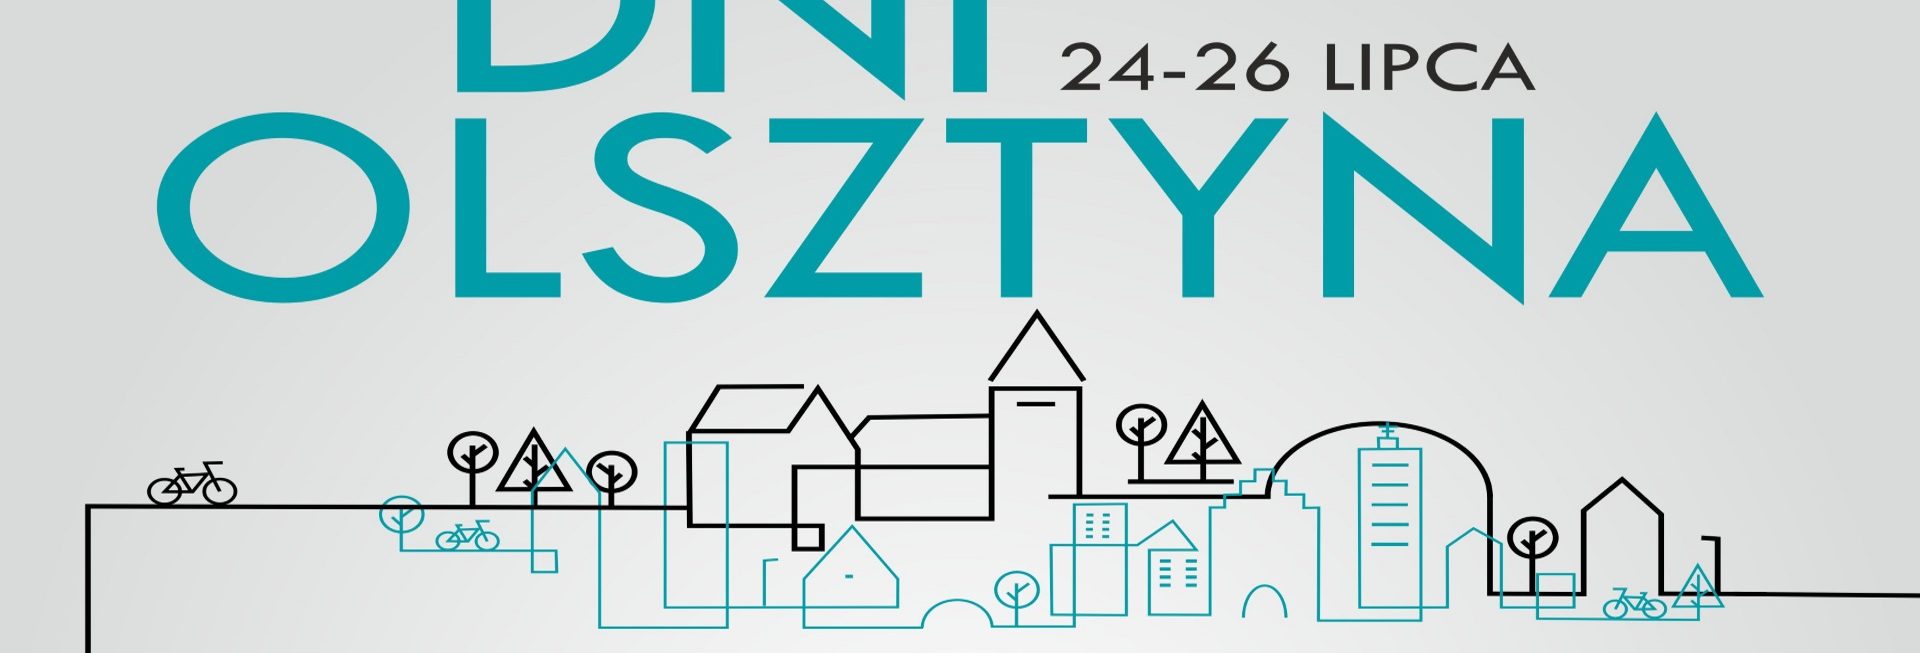 Plakat graficzny zapraszający w dniach 24-26 lipca 2020 r. do Olsztyna na cykliczną imprezę - Dni Olsztyna 2020. Na plakacie kontury graficzne budynków miasta oraz napisy i data zapraszające na koncert.  